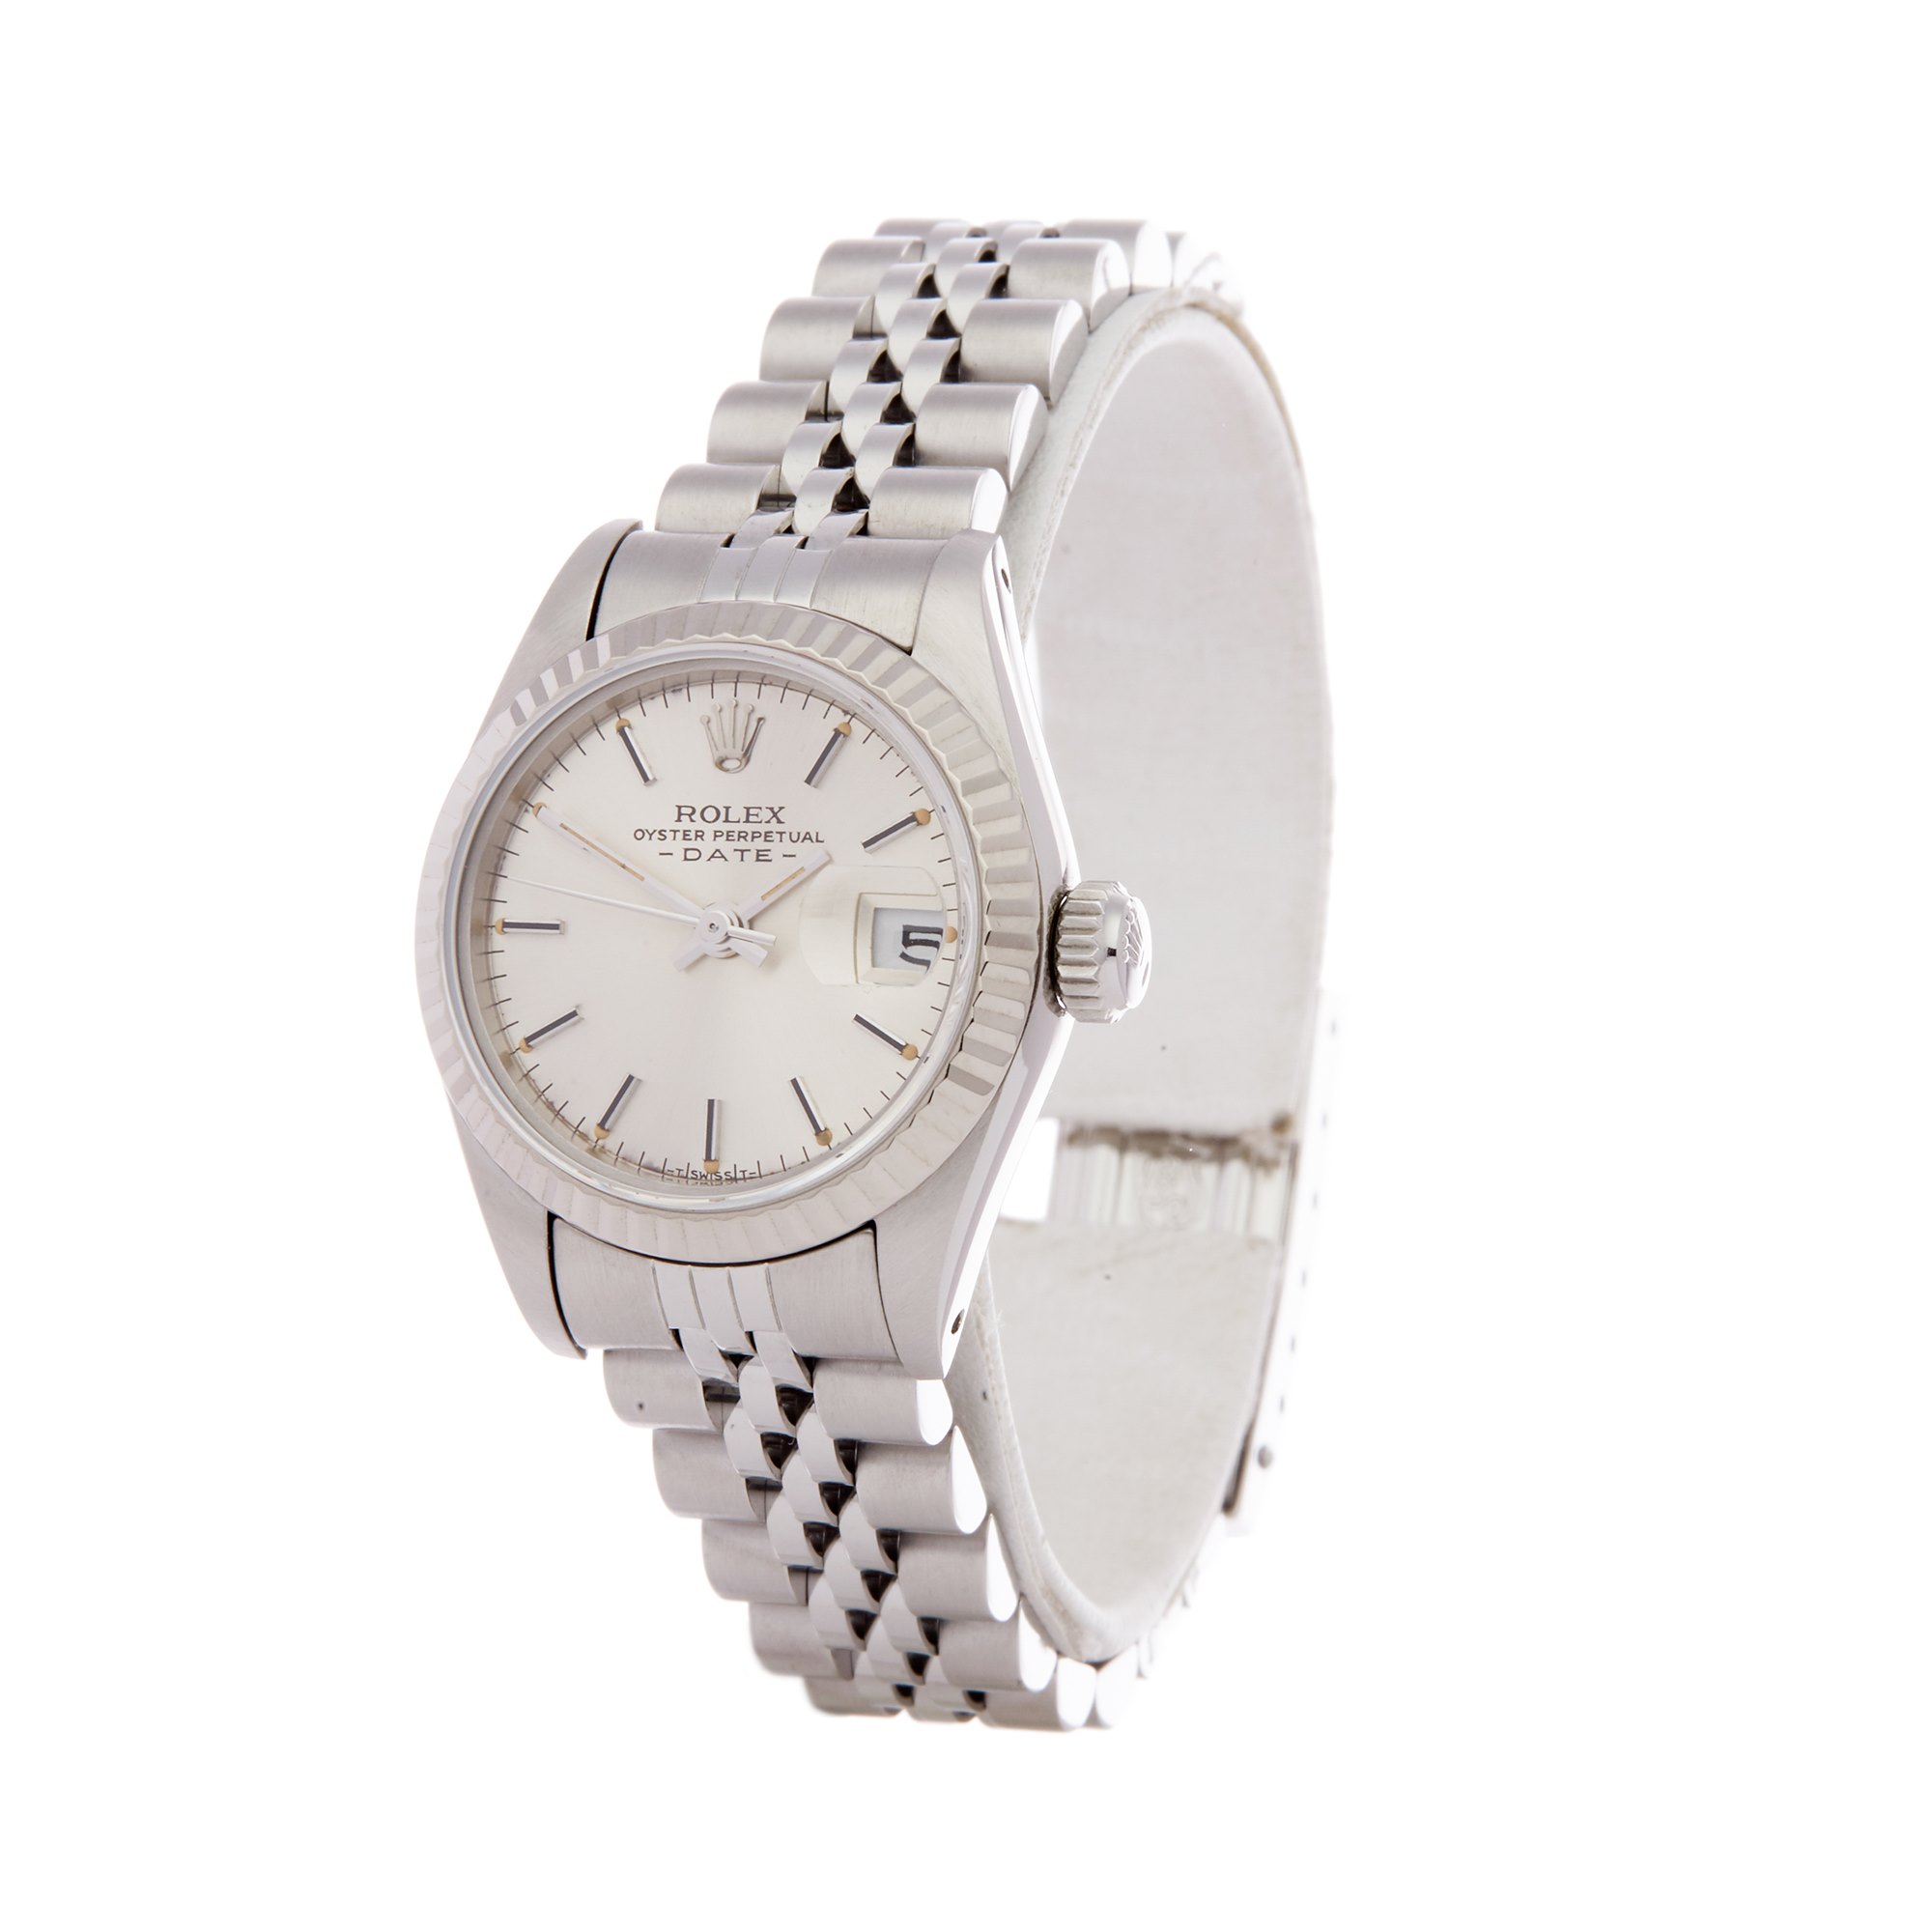 Rolex Datejust 26 69174 Ladies Stainless Steel Watch